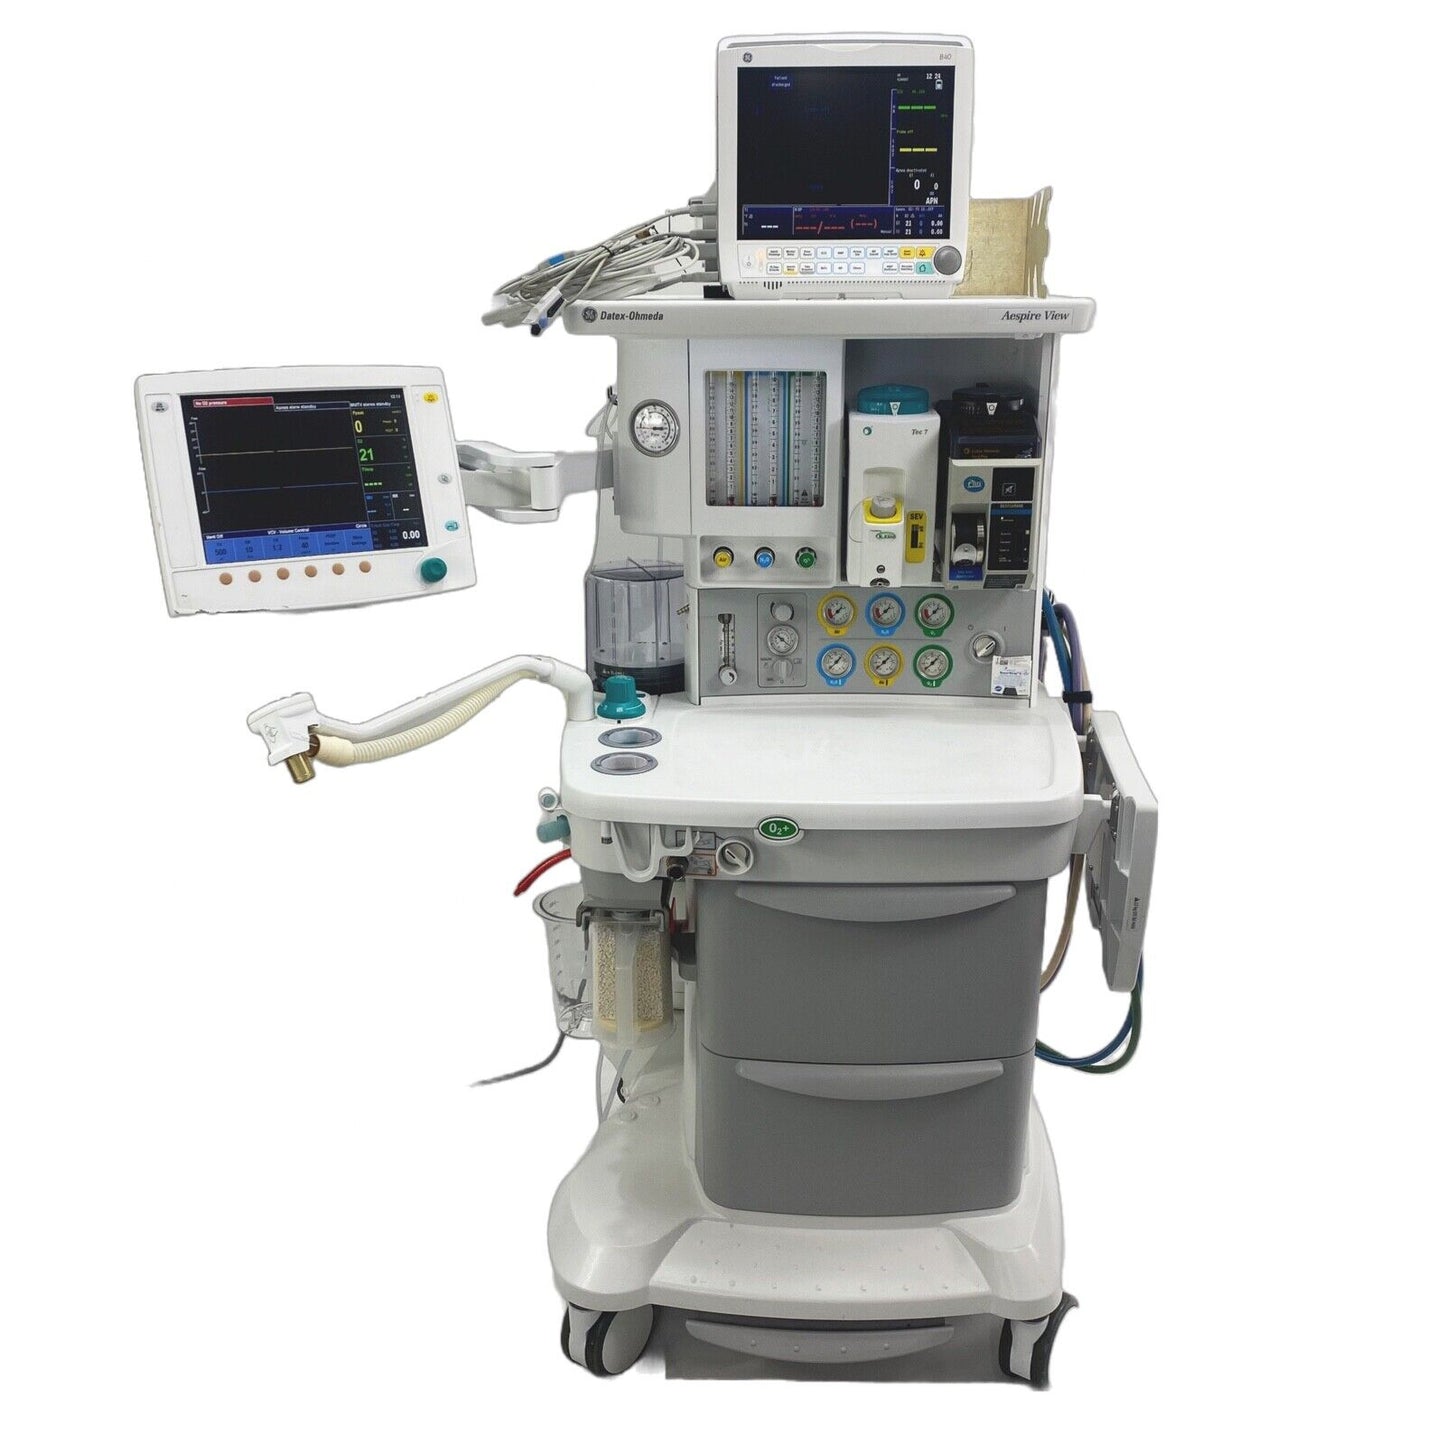 GE Datex-Ohmeda Aespire View Anesthesia Machine - GE B40 Patient Monitor